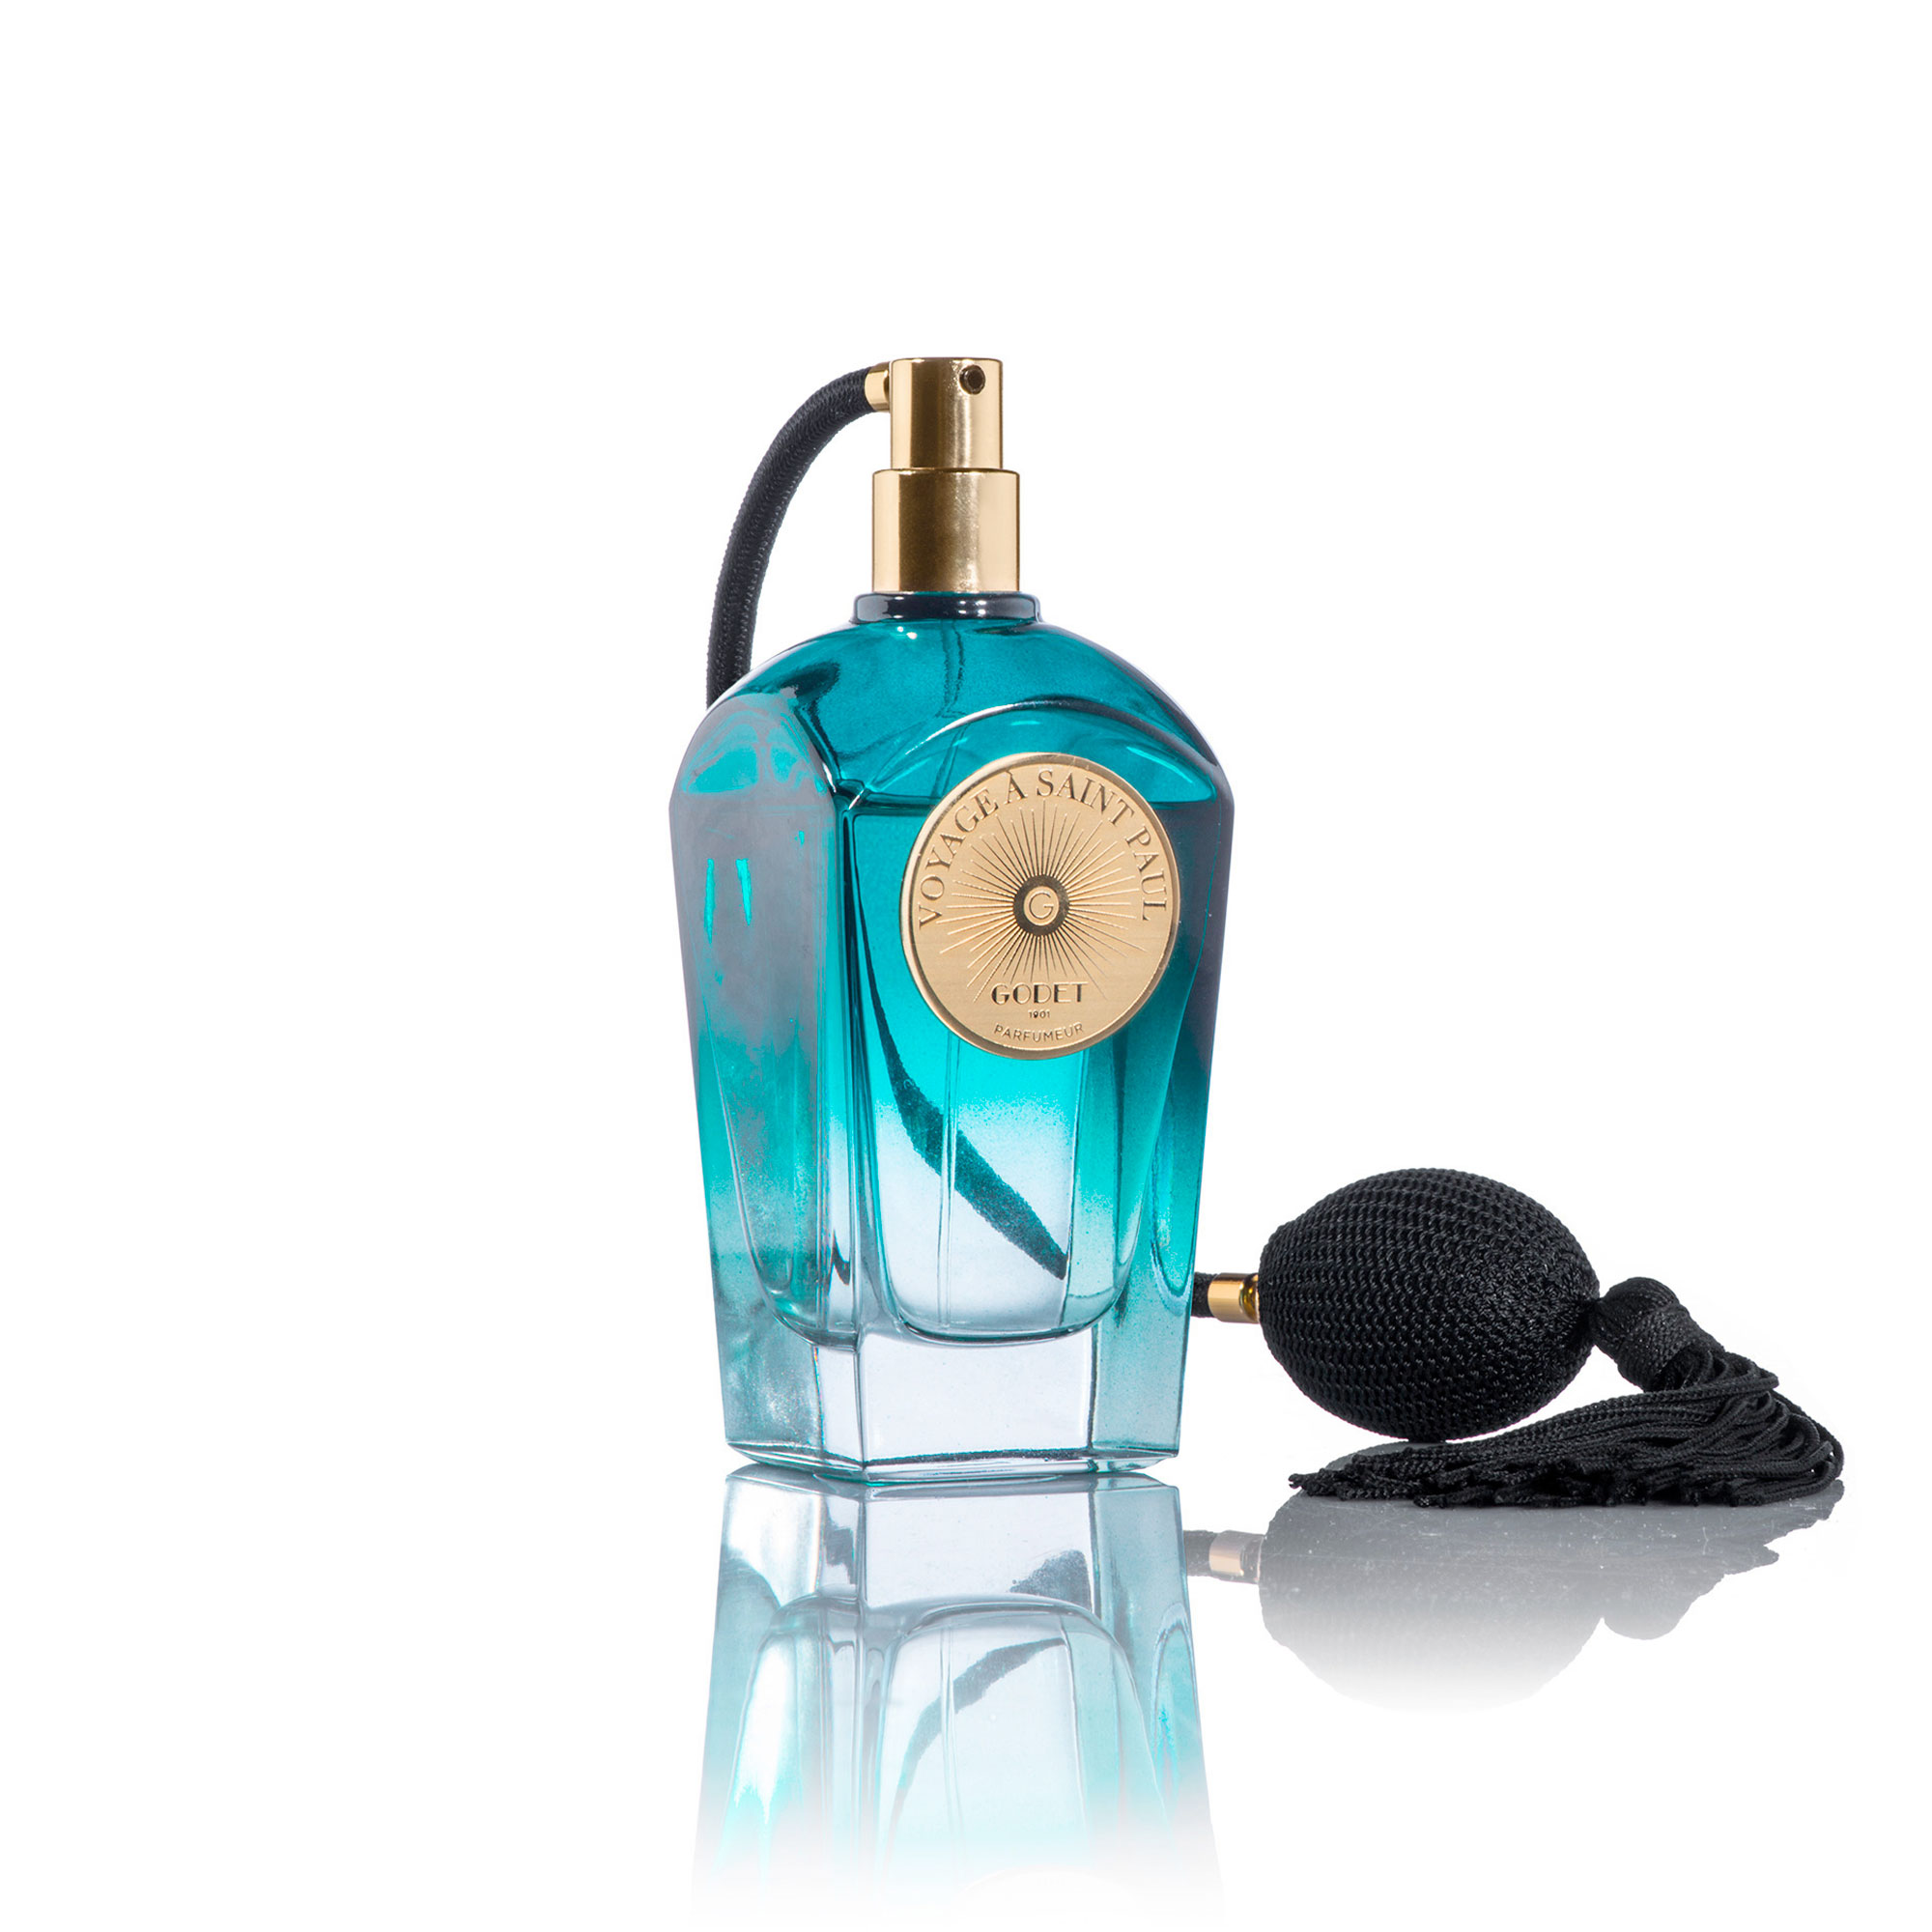 Bleu de Chanel Parfum Review  The GOAT of Blue Fragrances 